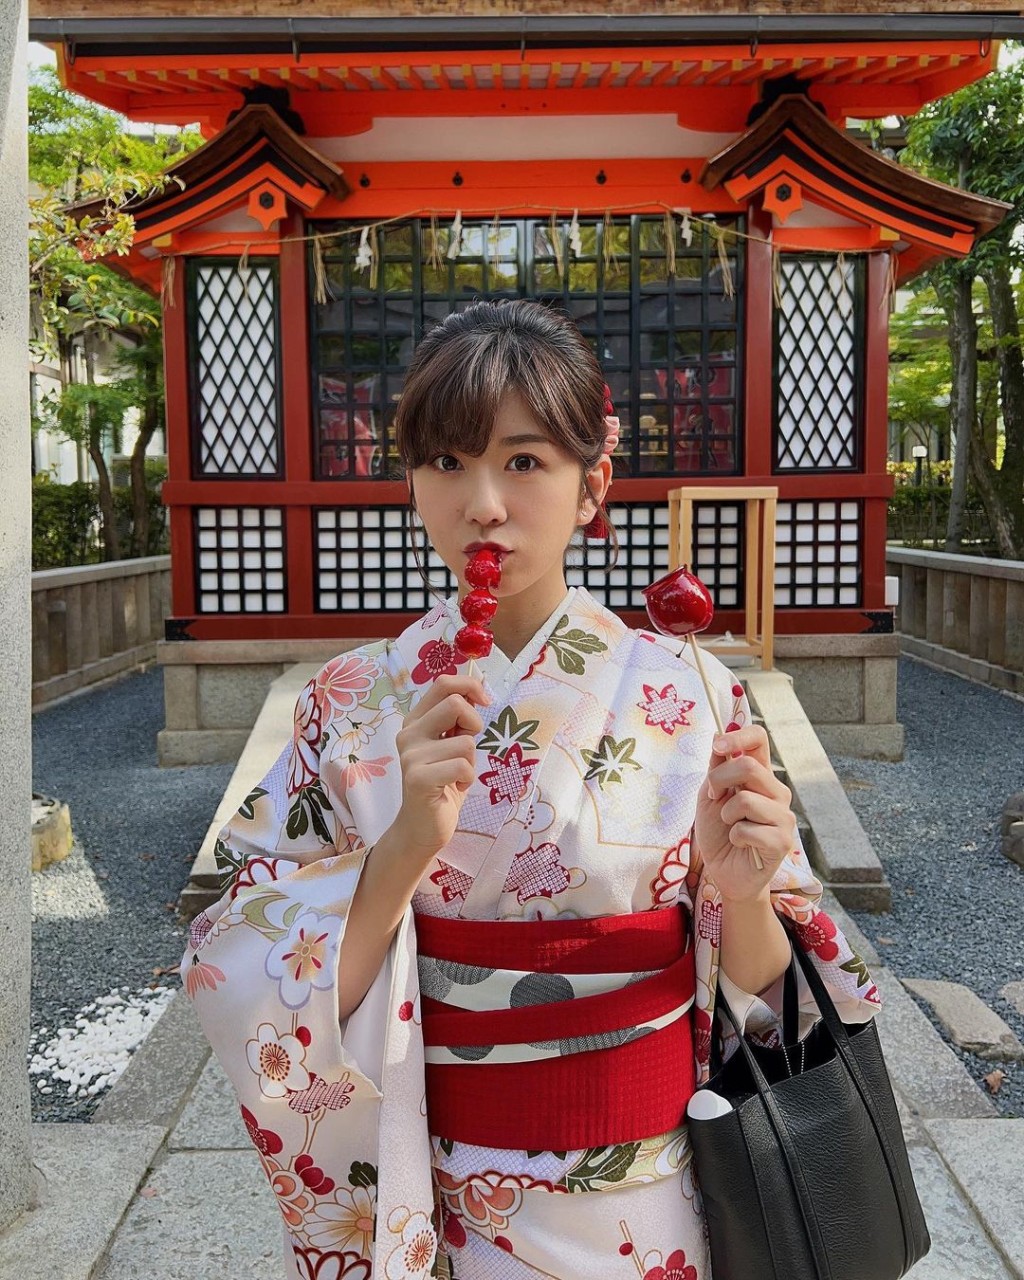 日本和服Look当然最适合。